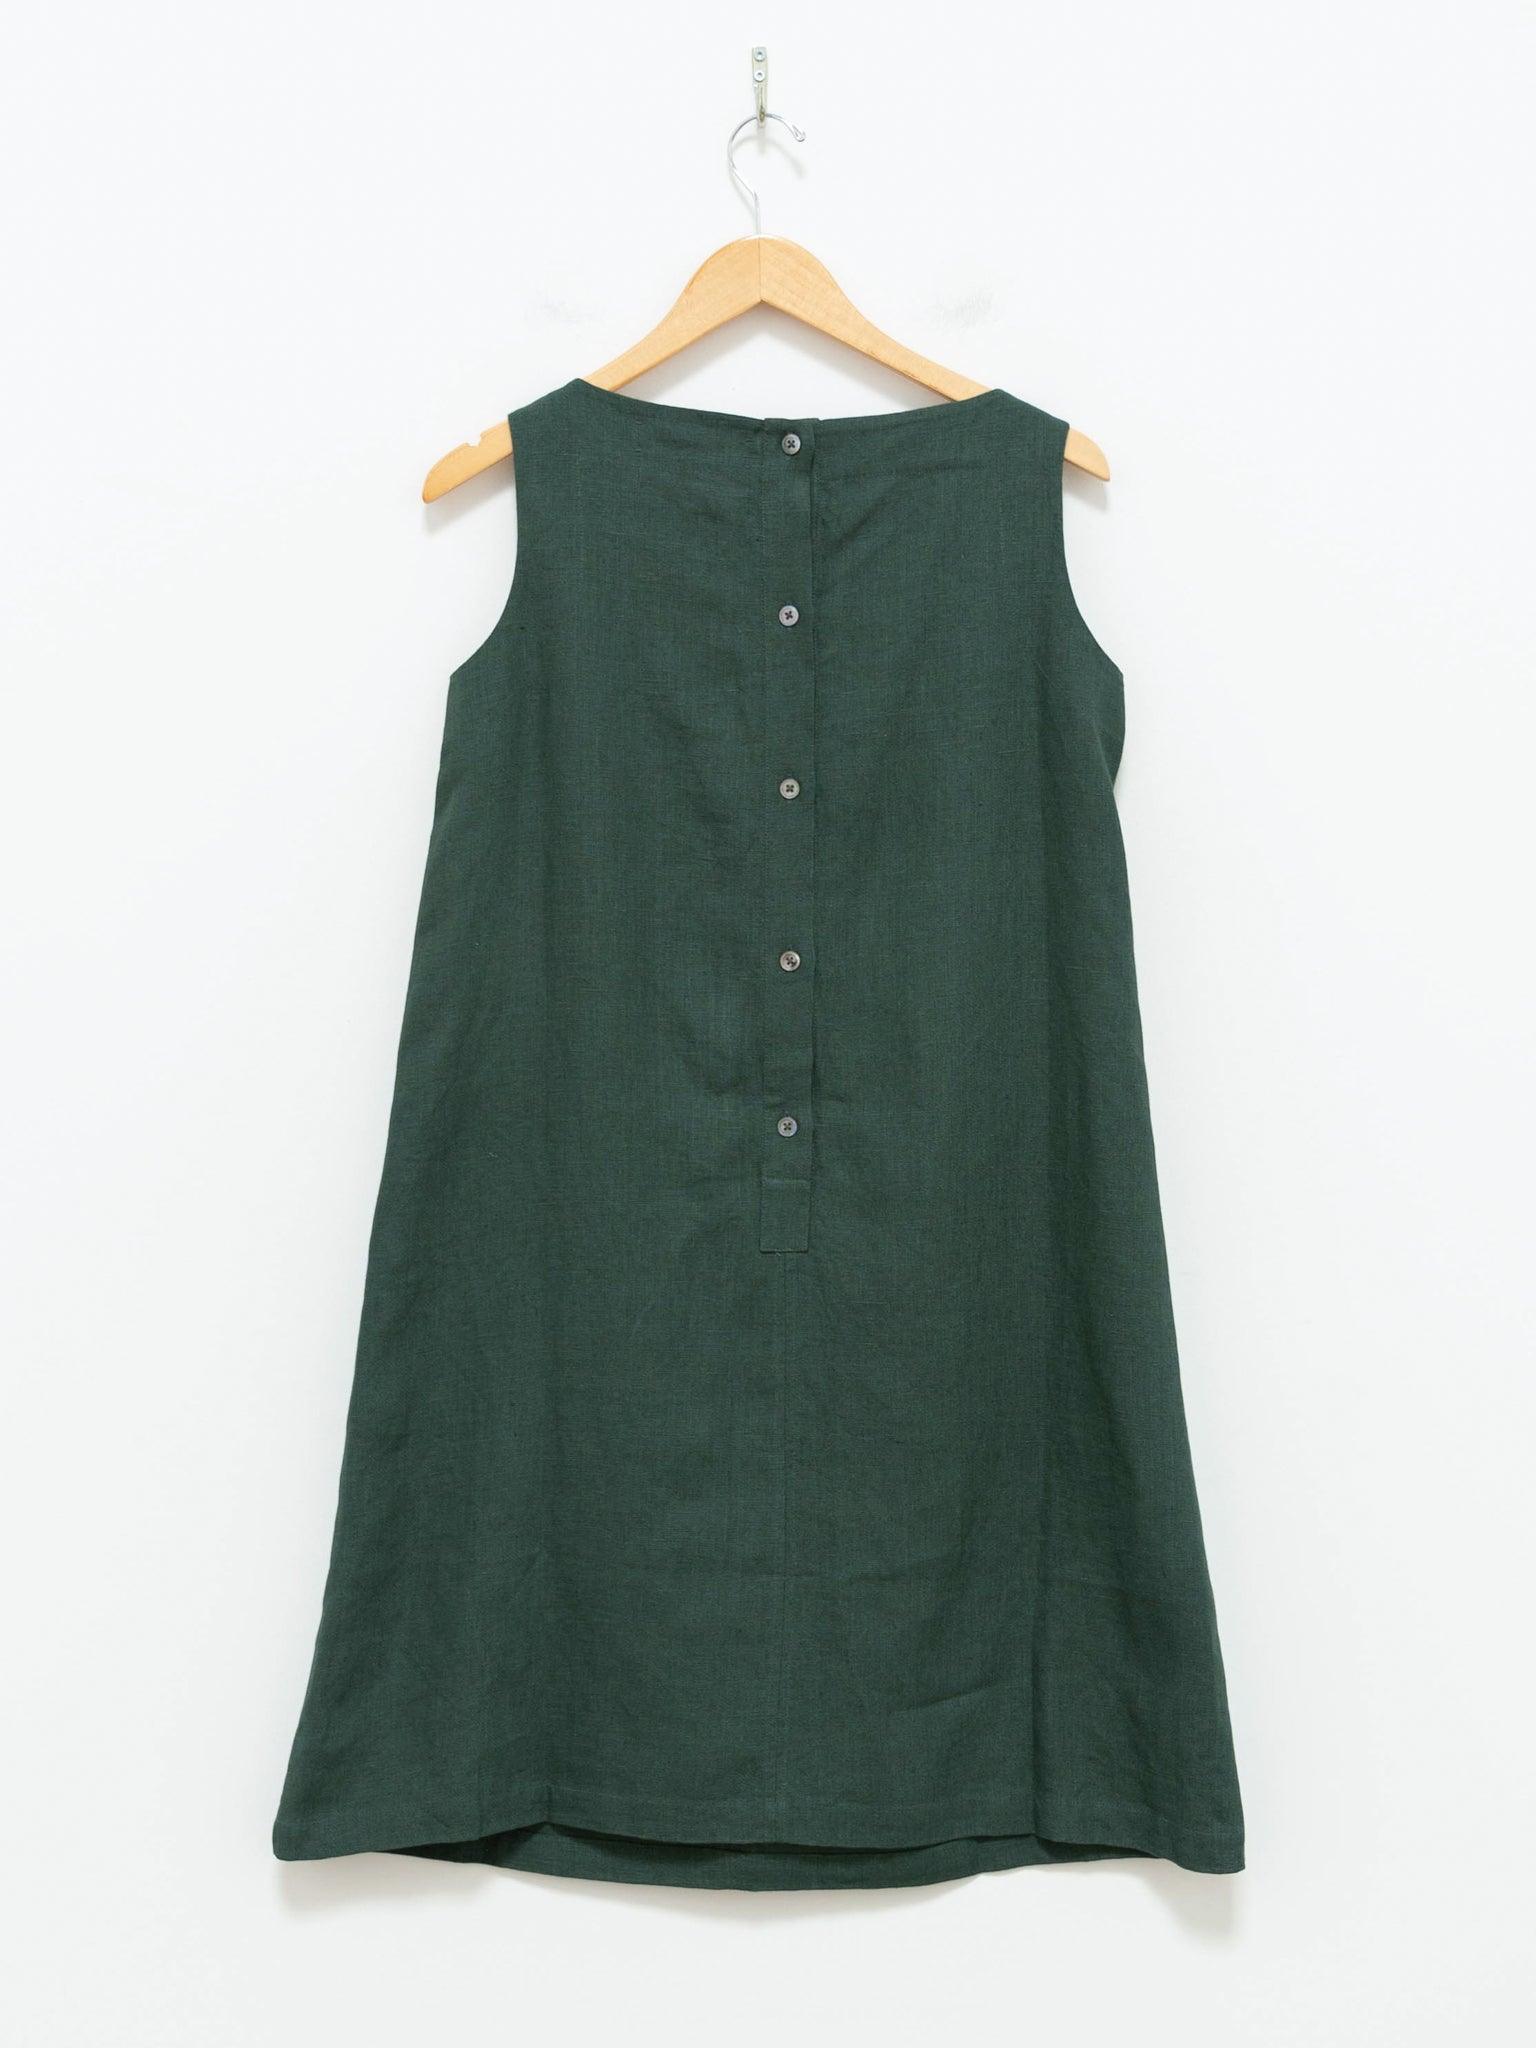 Namu Shop - Jan Machenhauer Lulu Dress - Forest Linen